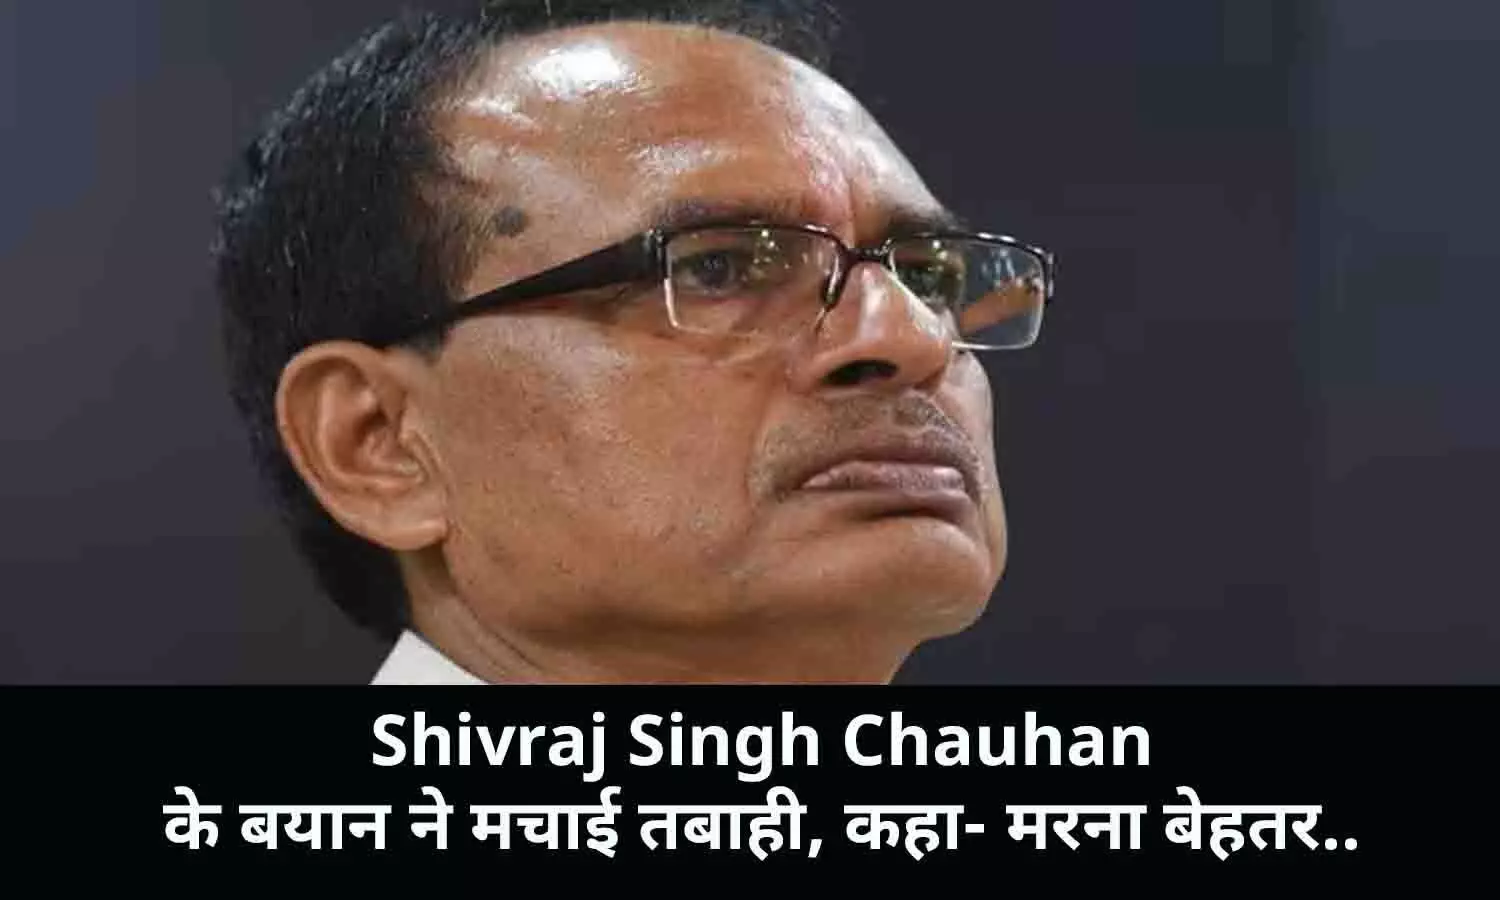 Shivraj Singh Chauhan